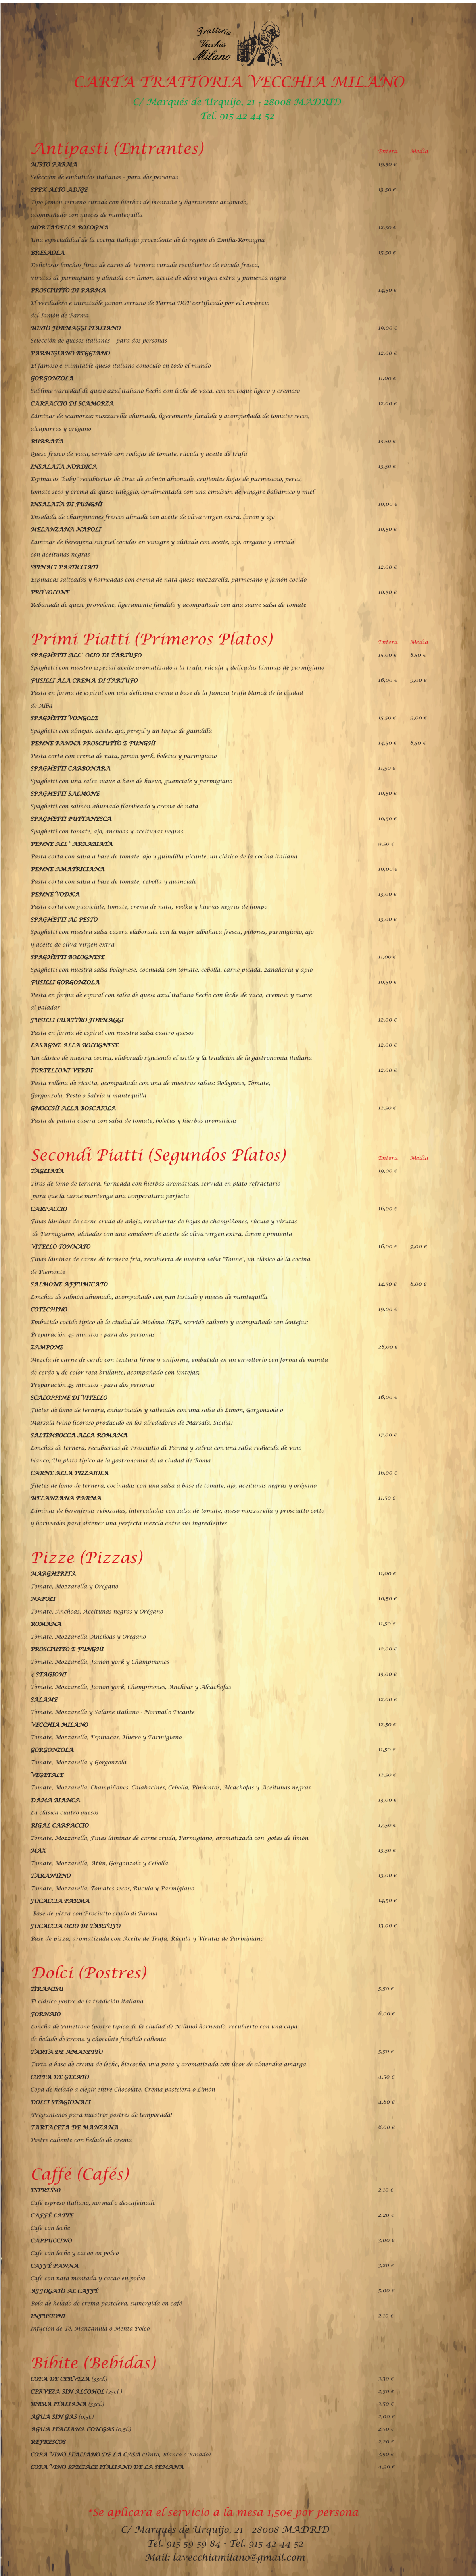 Trattoria Vecchia Milano menu